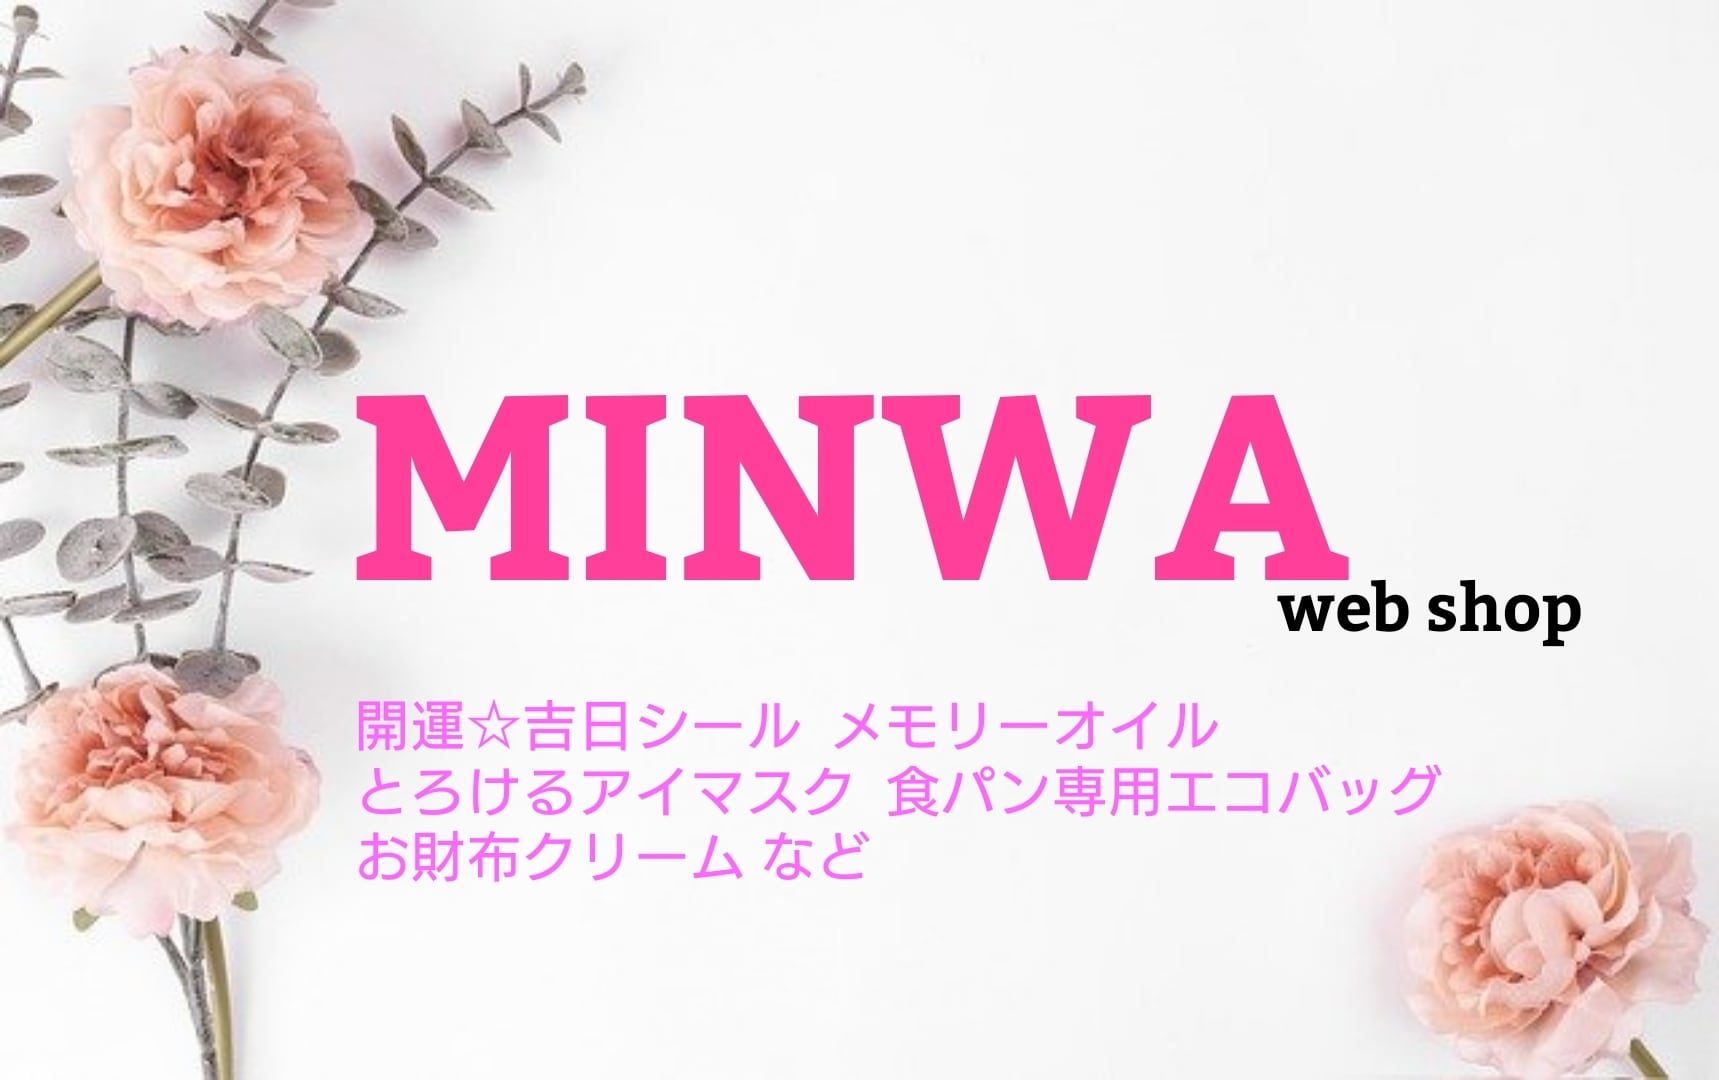 金運をアップさせる魔法のWebショップ MINWA